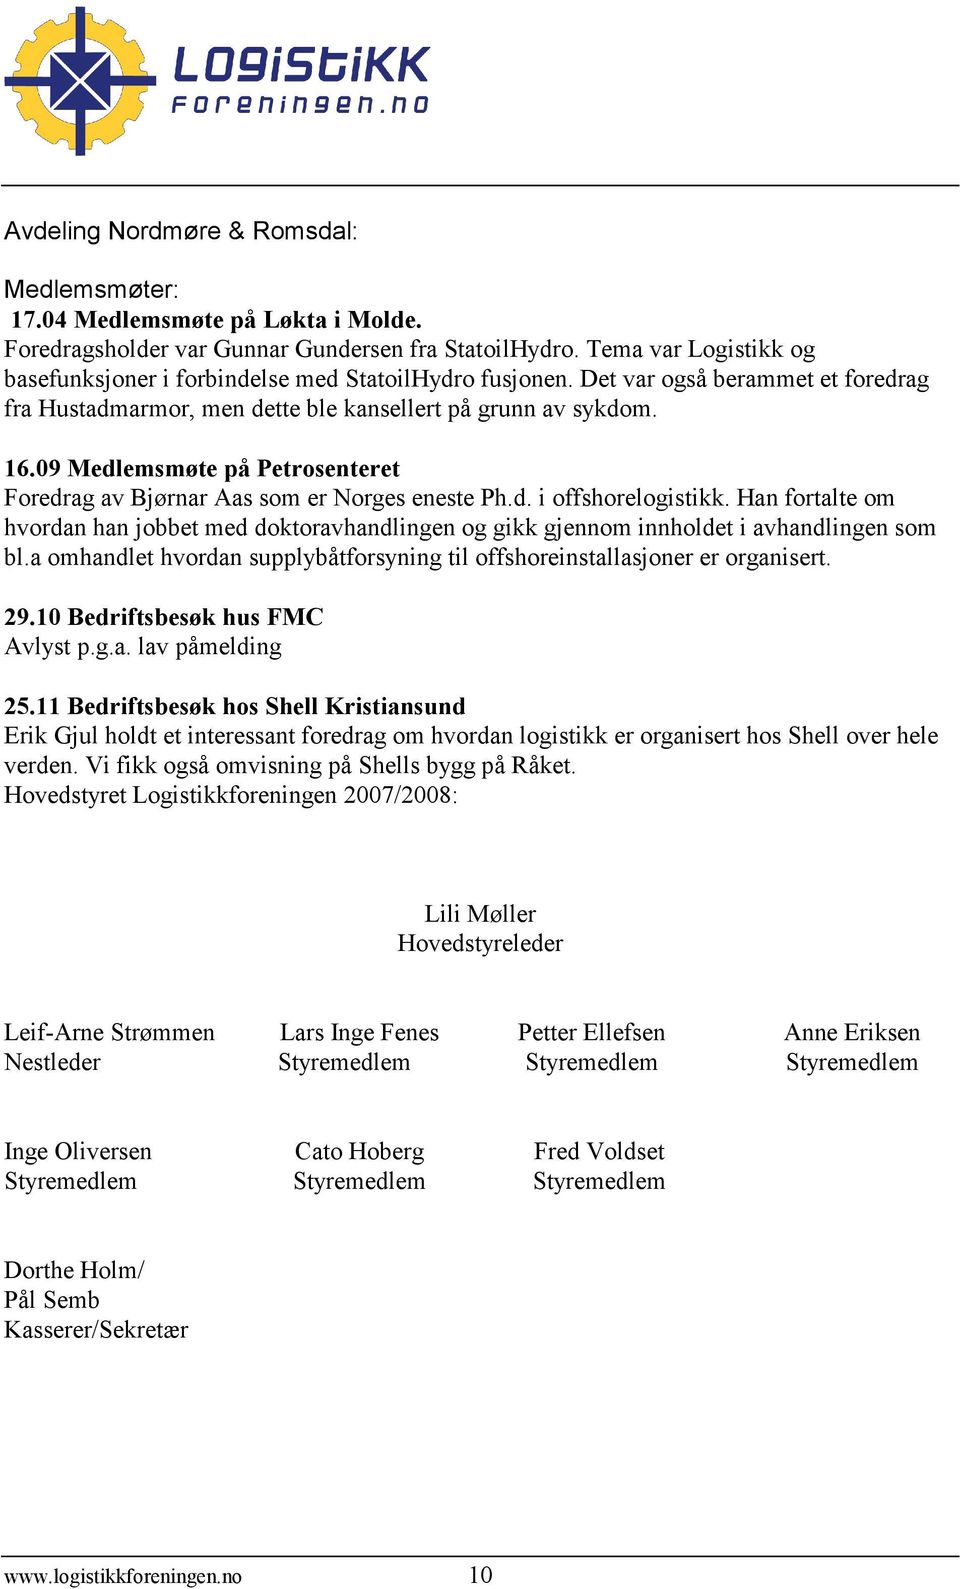 09 Medlemsmøte på Petrosenteret Foredrag av Bjørnar Aas som er Norges eneste Ph.d. i offshorelogistikk.